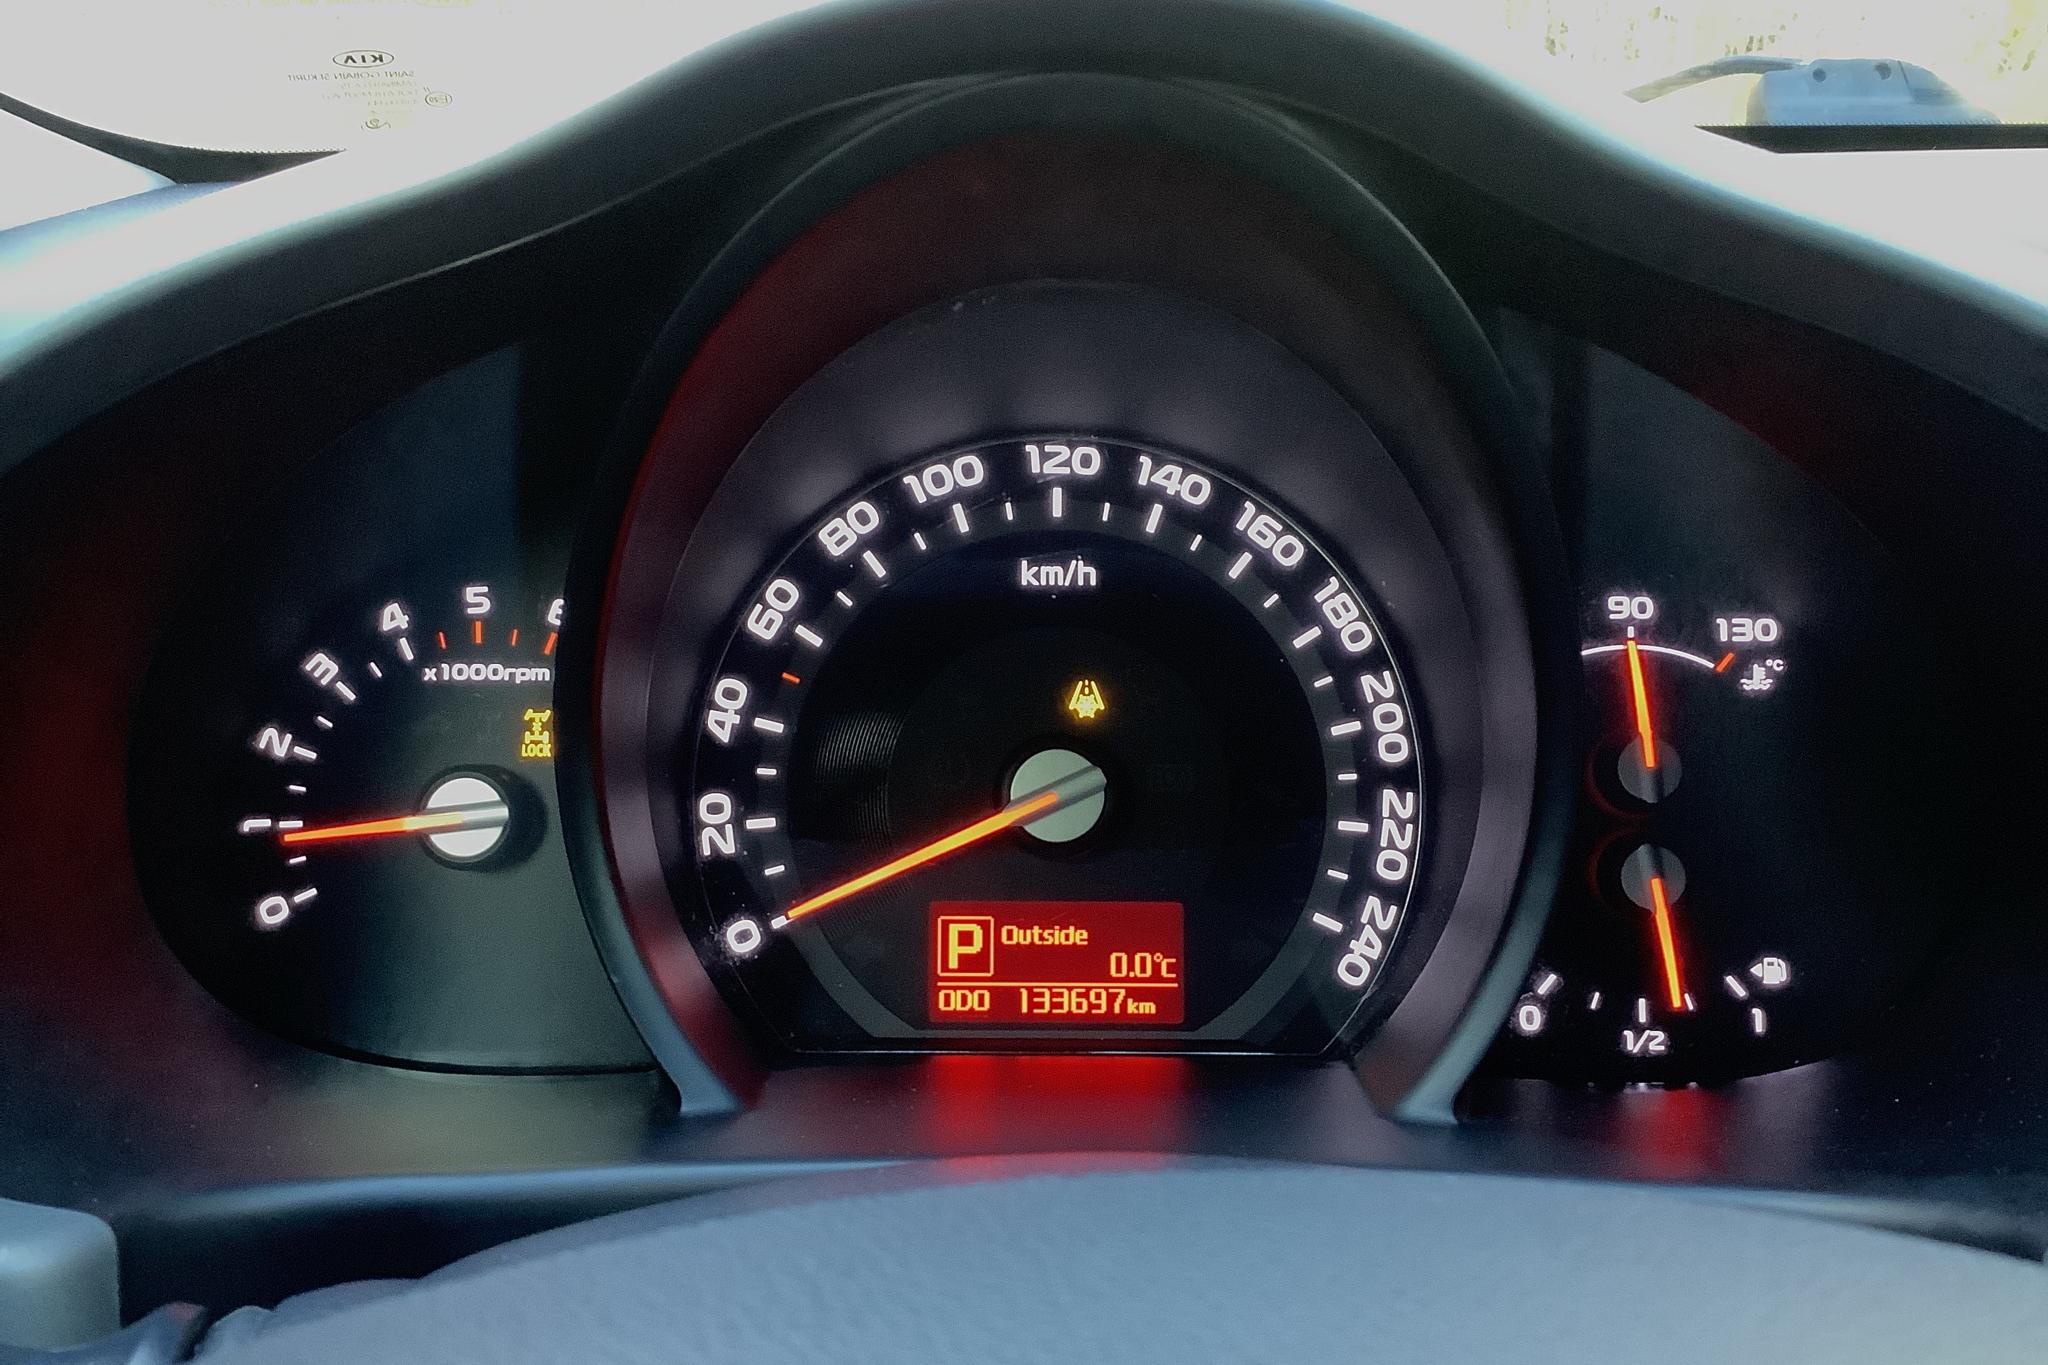 KIA Sportage 2.0 CRDi AWD (184hk) - 13 369 mil - Automat - vit - 2014